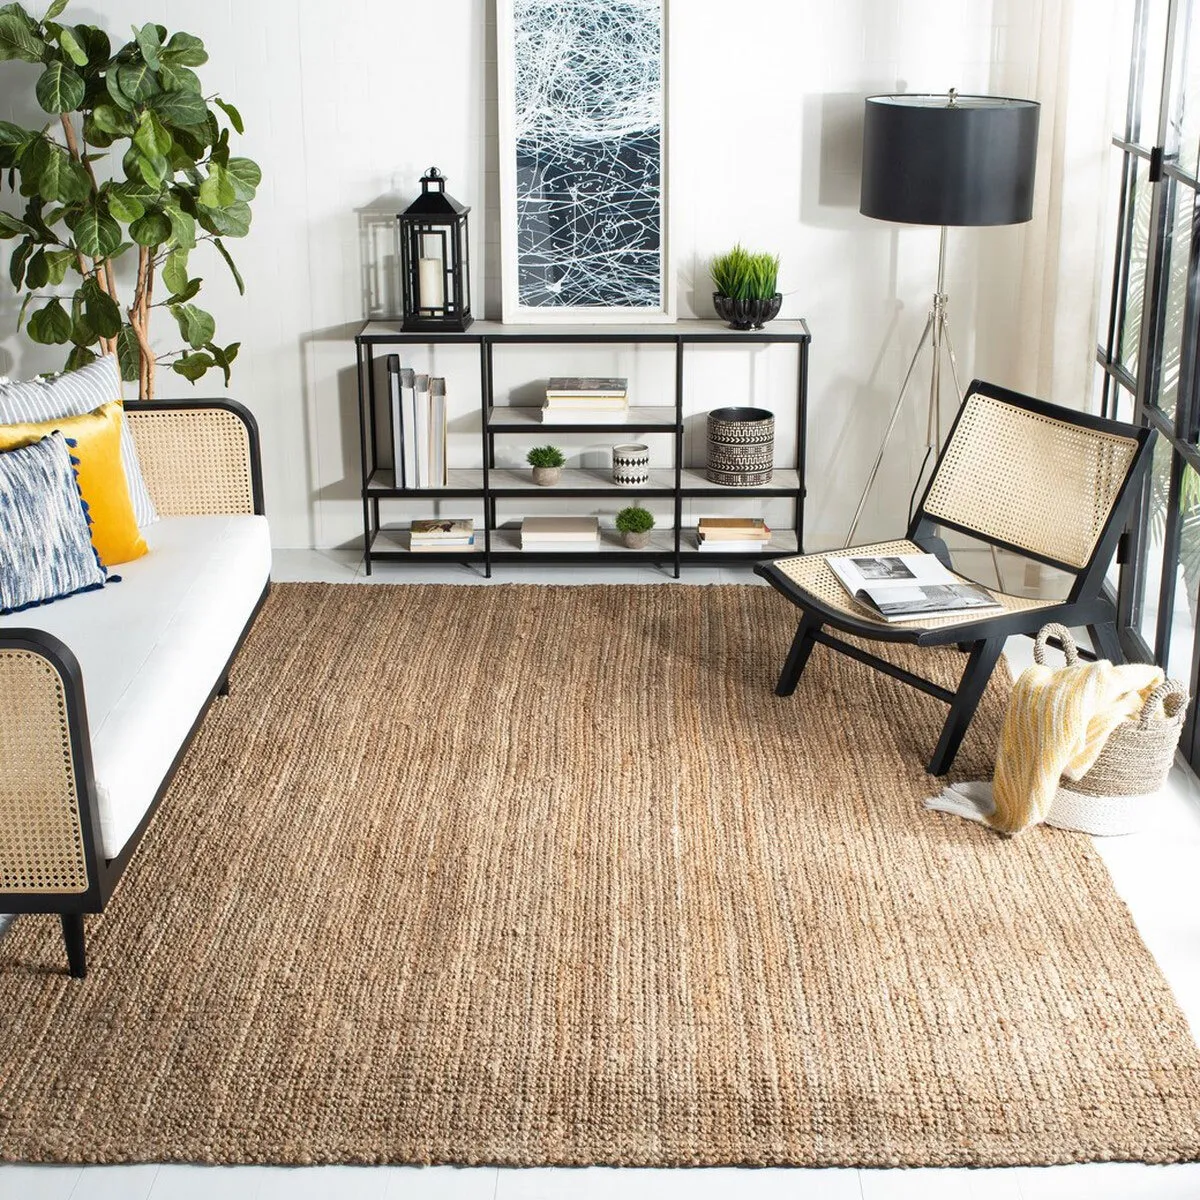 Thảm trải sàn làm từ chất liệu đay thích hợp để trải cho phòng khách